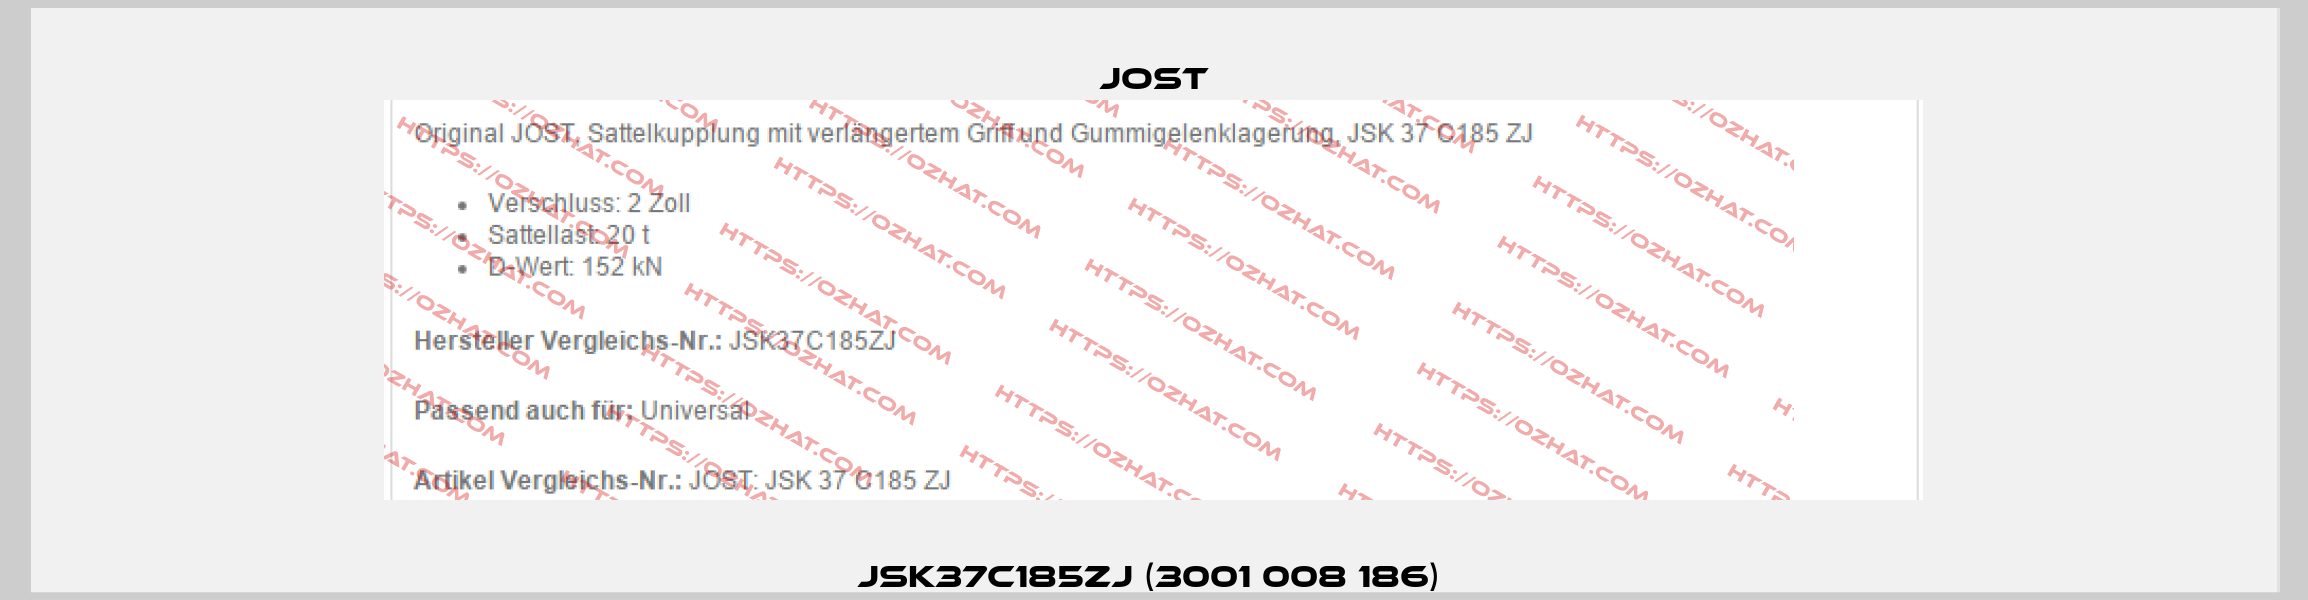 JSK37C185ZJ (3001 008 186)  Jost